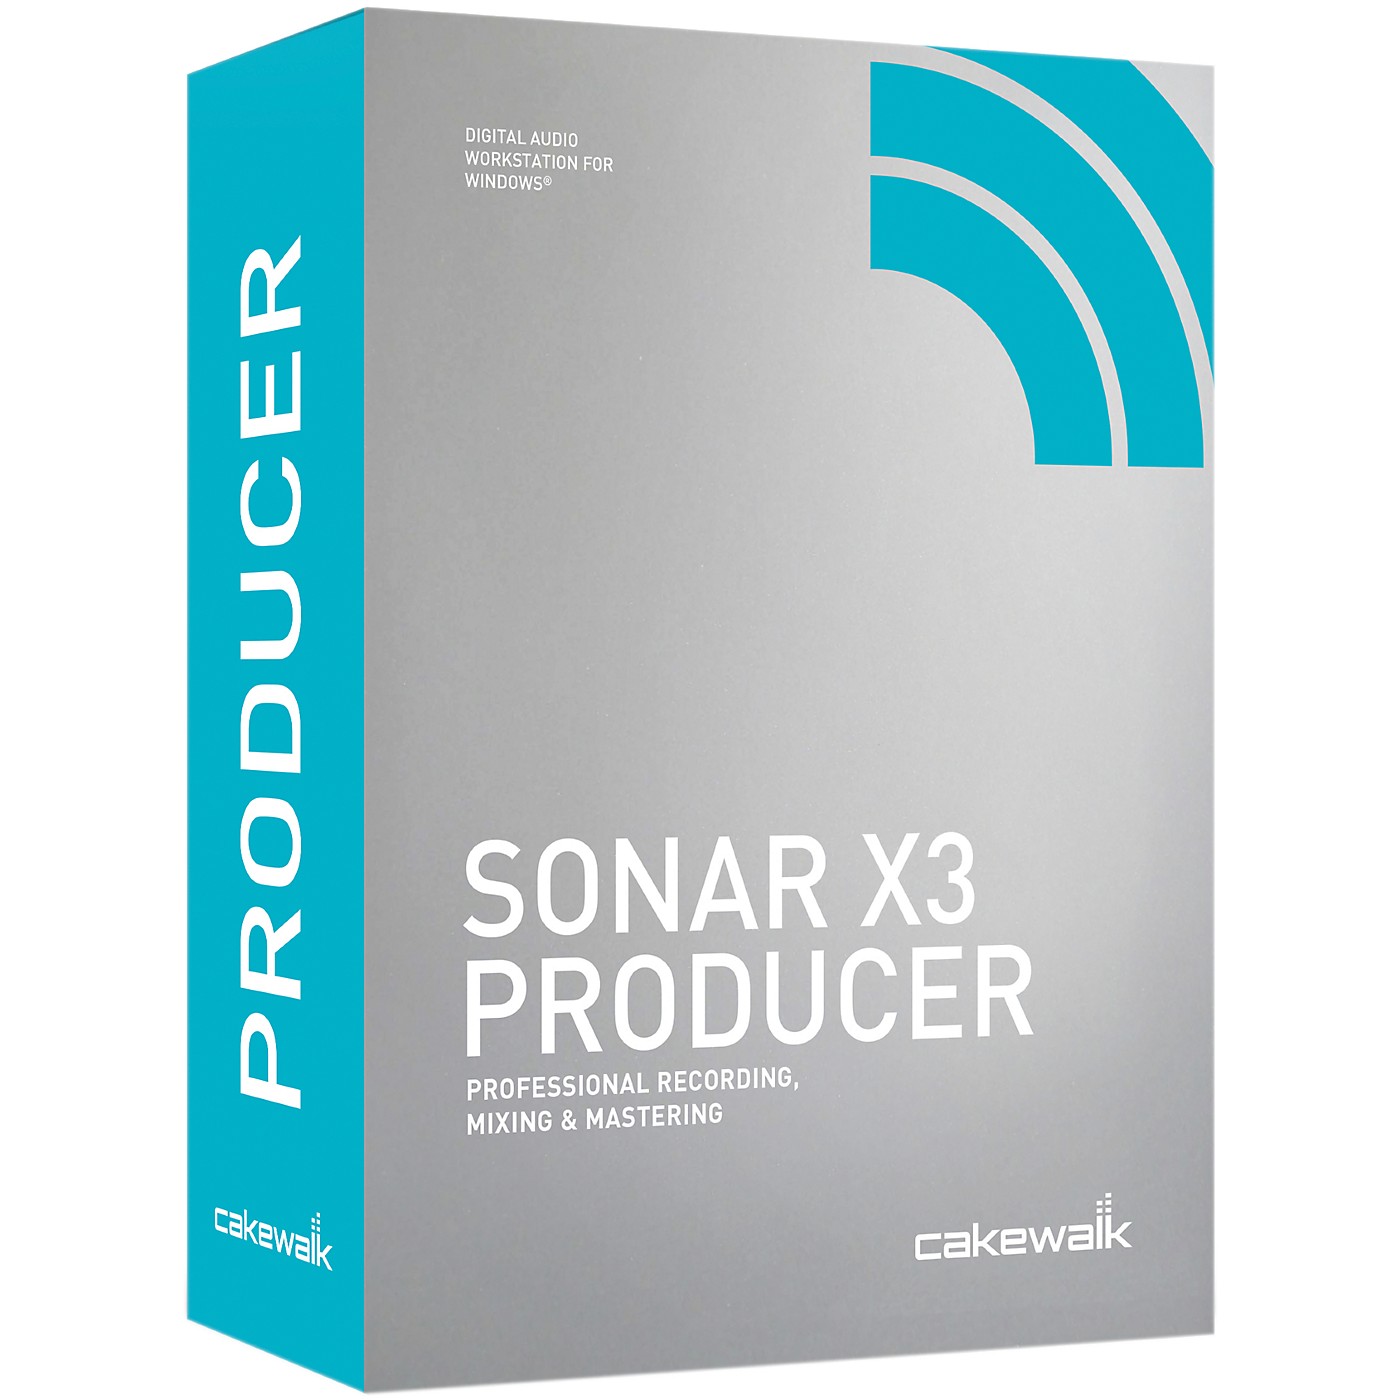 sonar simulation toolset sst software download